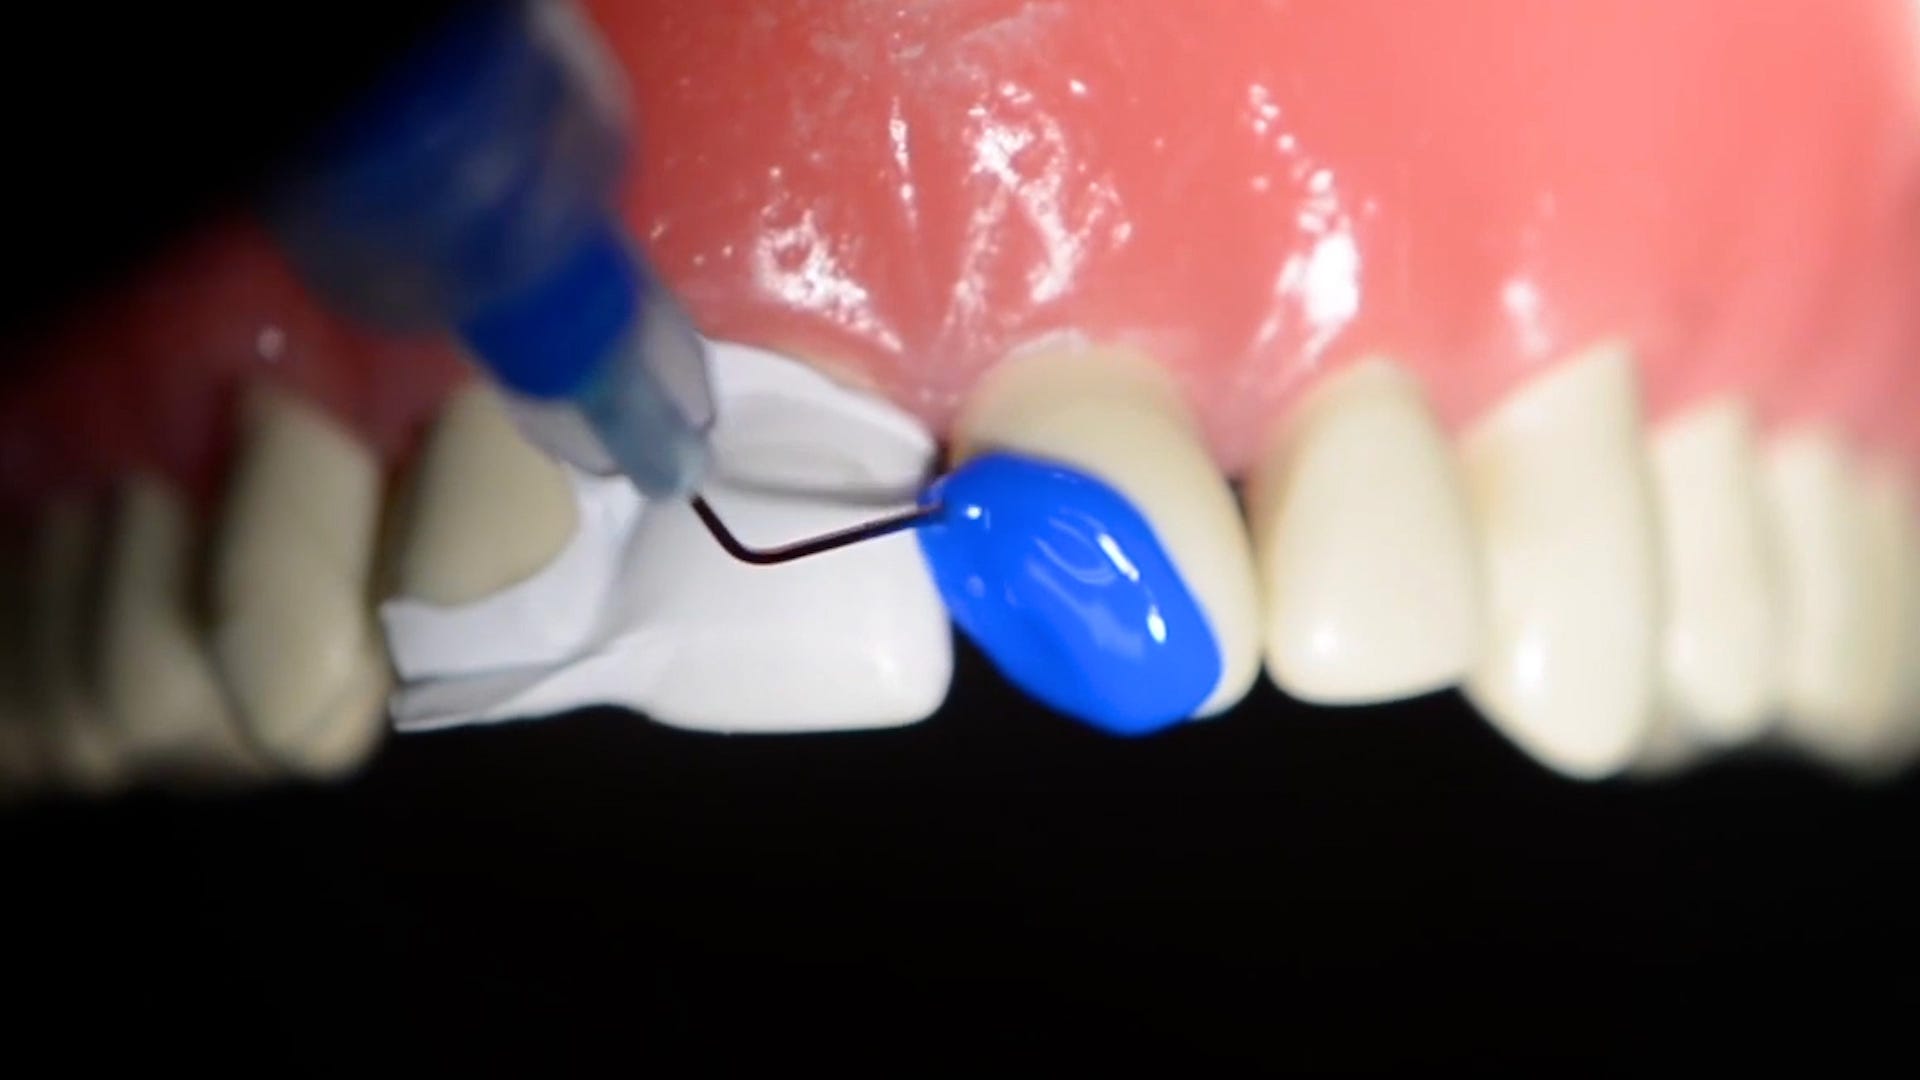 Blaue Paste wird auf den abgebrochenen Zahn aufgetragen.